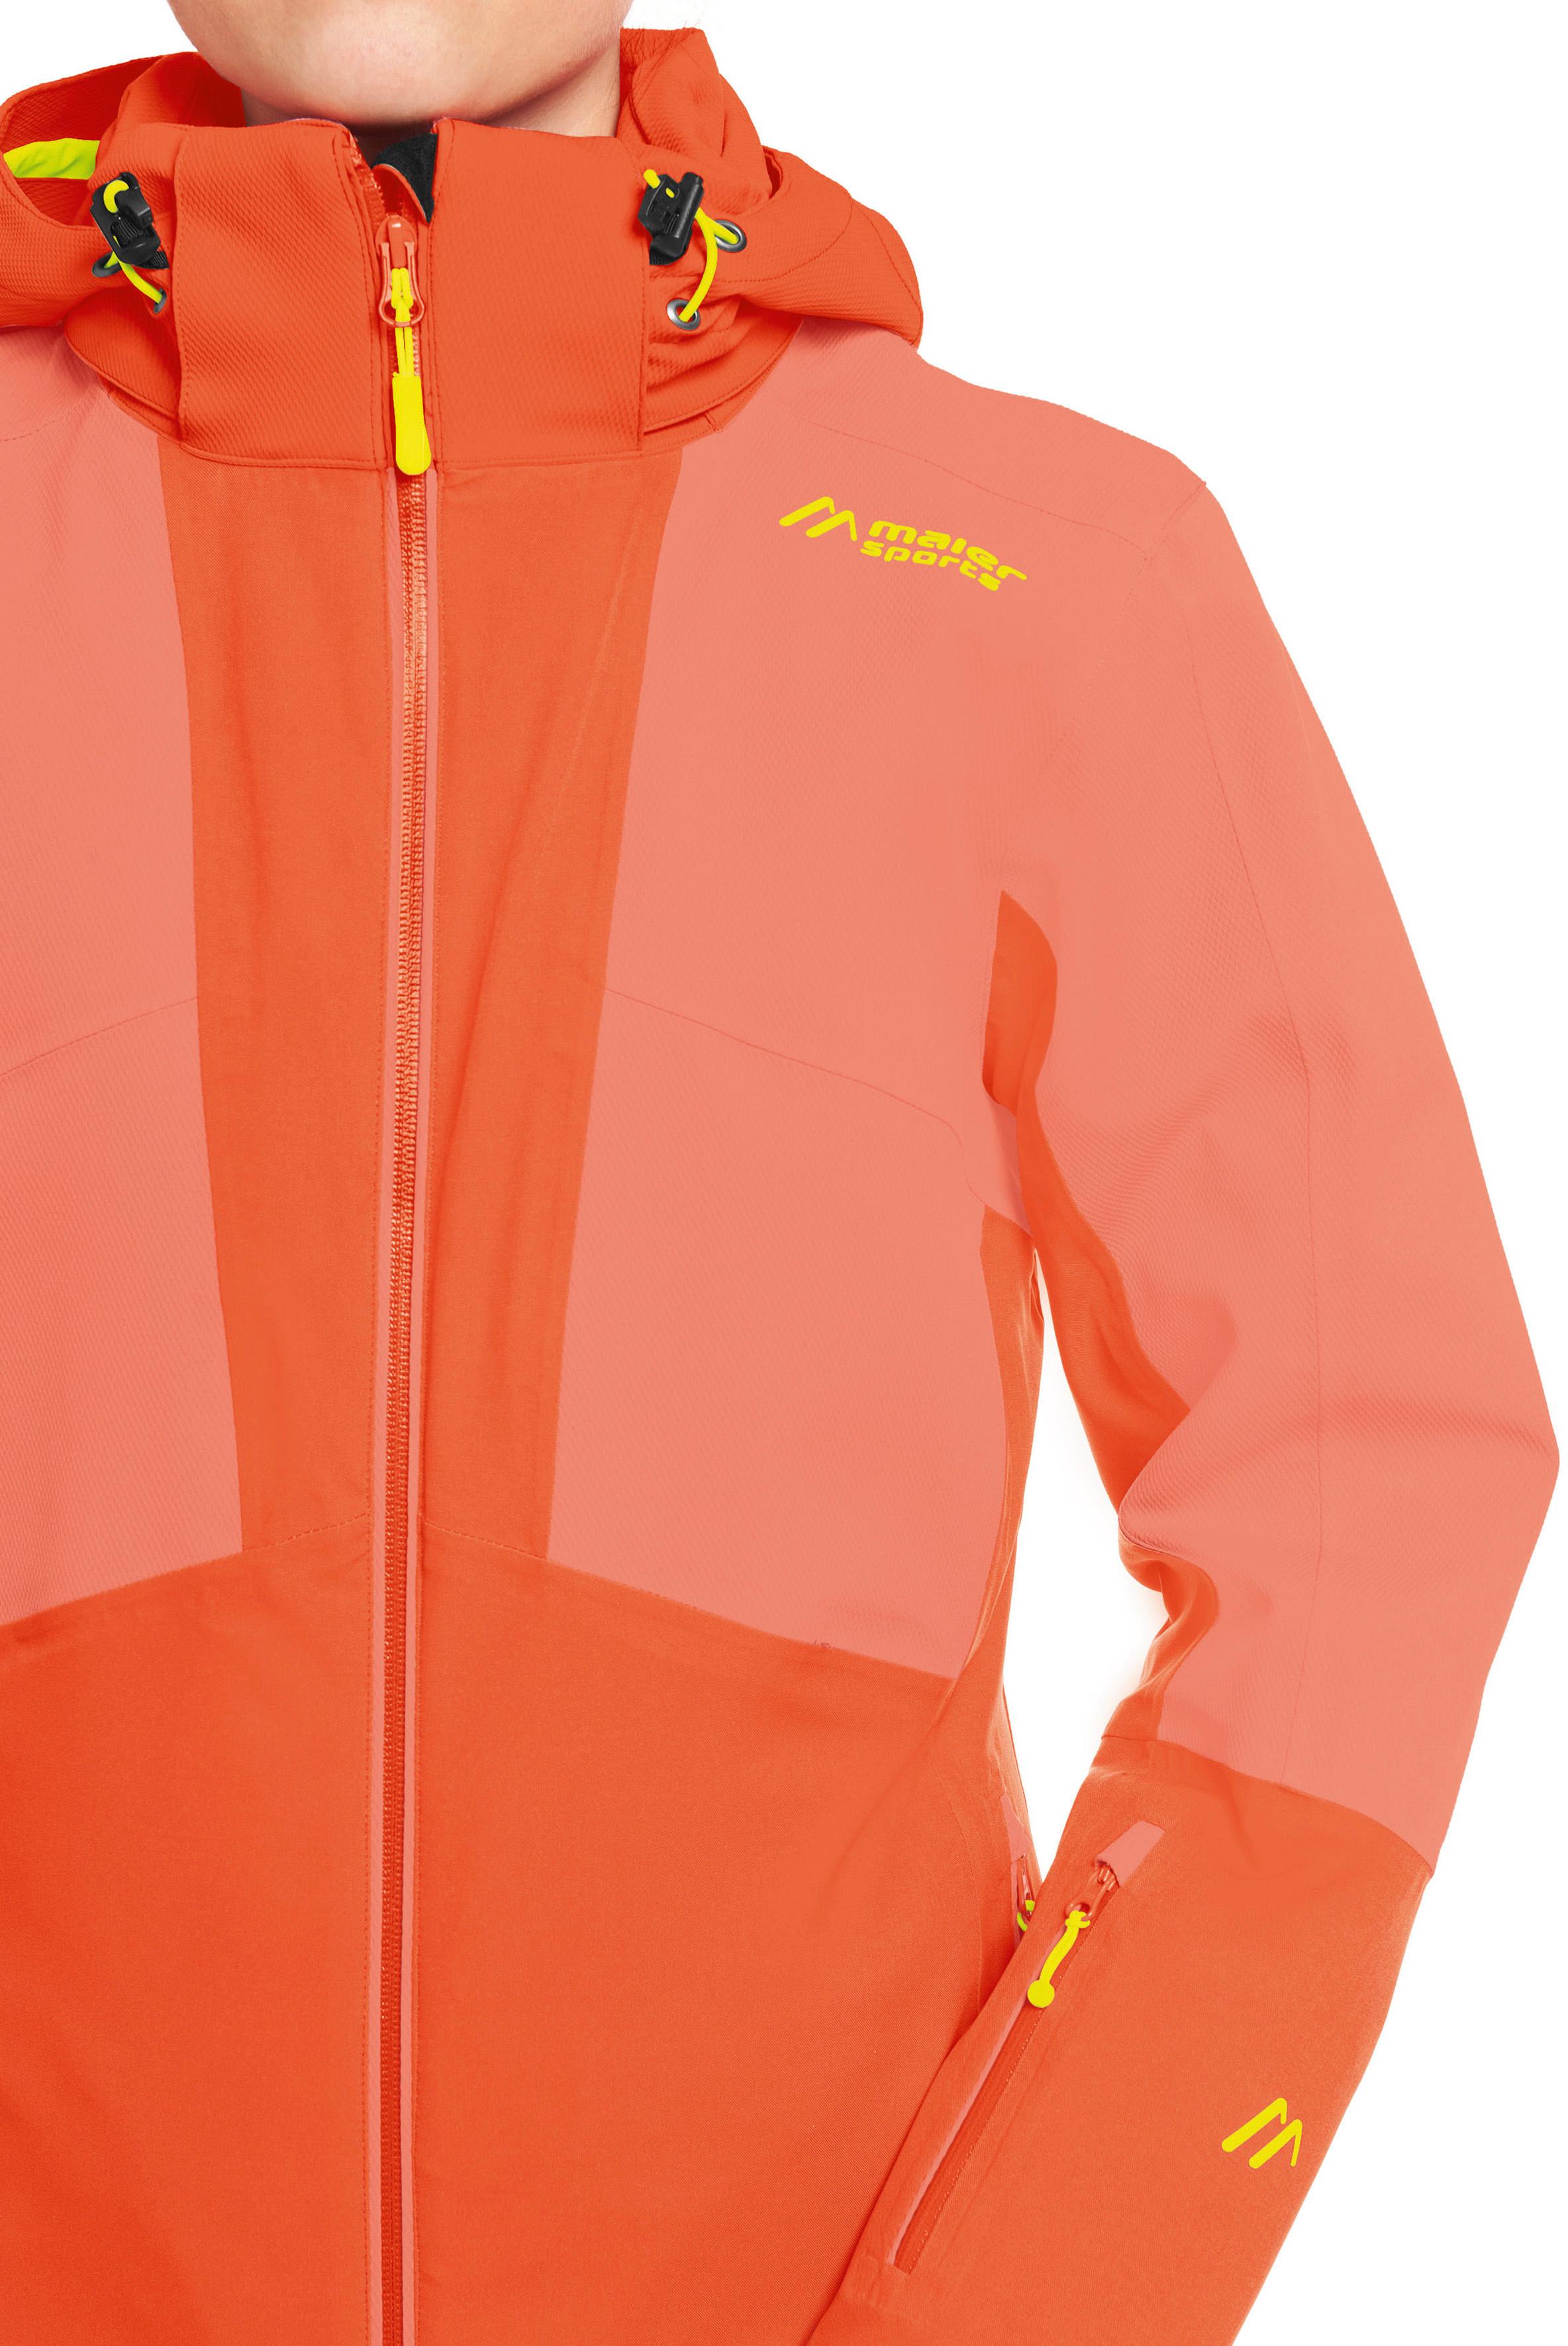 Maier Sports Fast Impulse red Damen kaufen SportScheck im siren Online Skijacke Shop von